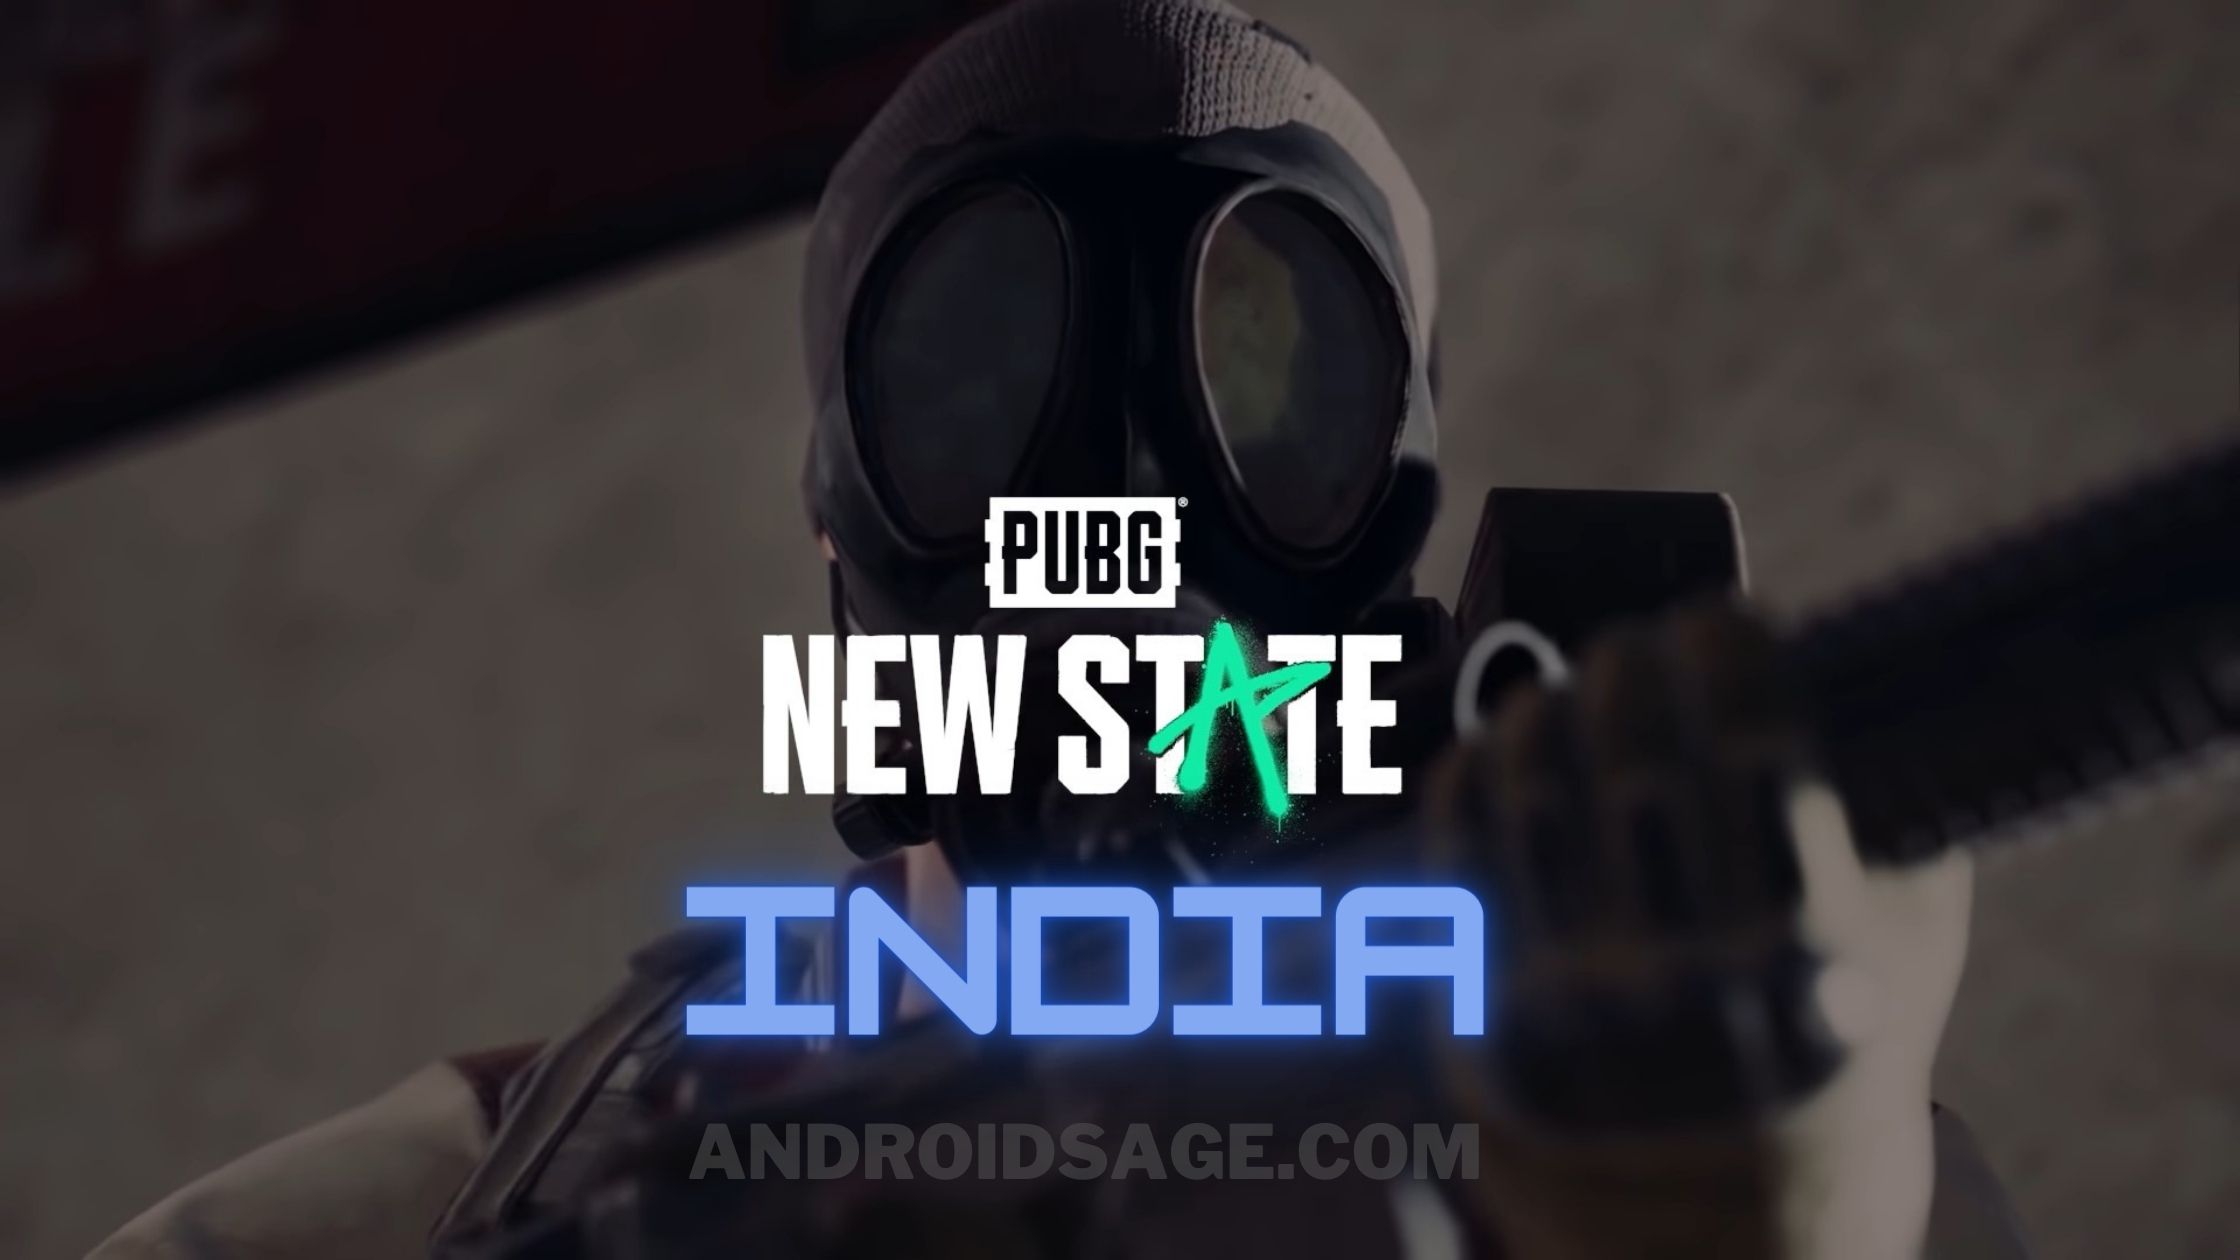 التنزيلات المسبقة لـ PUBG New State India مفتوحة الآن لنظامي Android و iOS 1